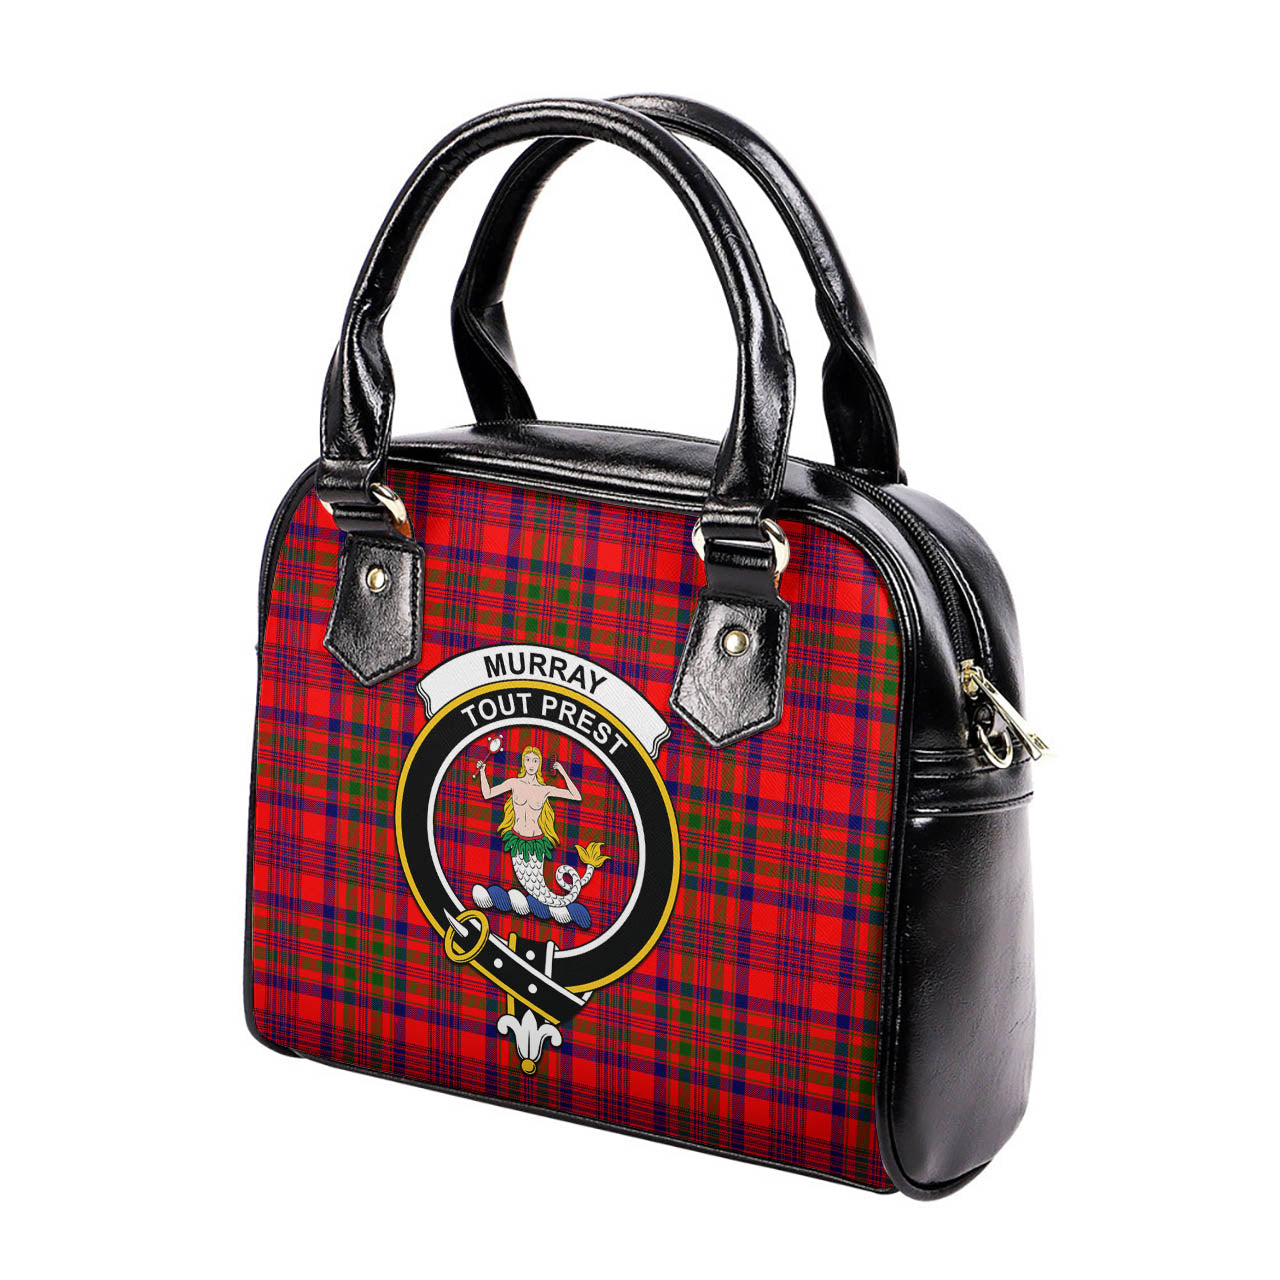 Murray of Tulloch Modern Tartan Shoulder Handbags with Family Crest - Tartanvibesclothing